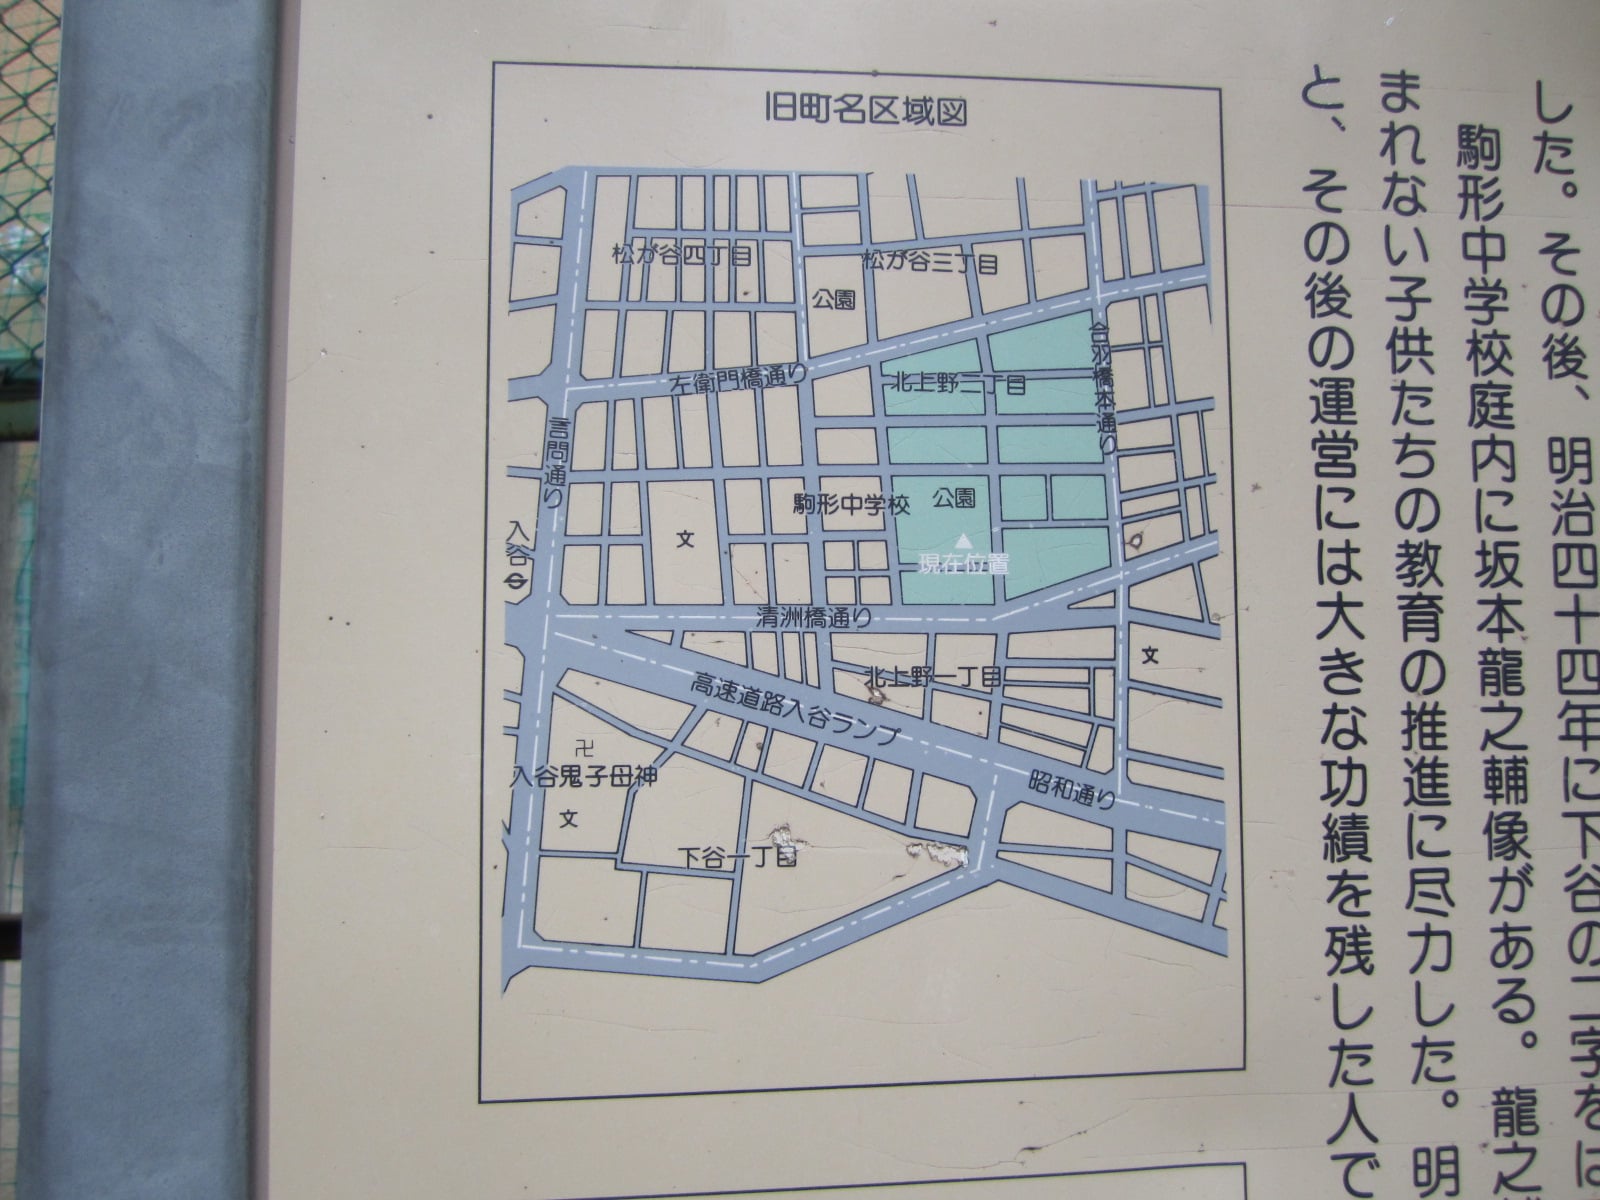 現在の地図にあてはめた山伏町の区域図